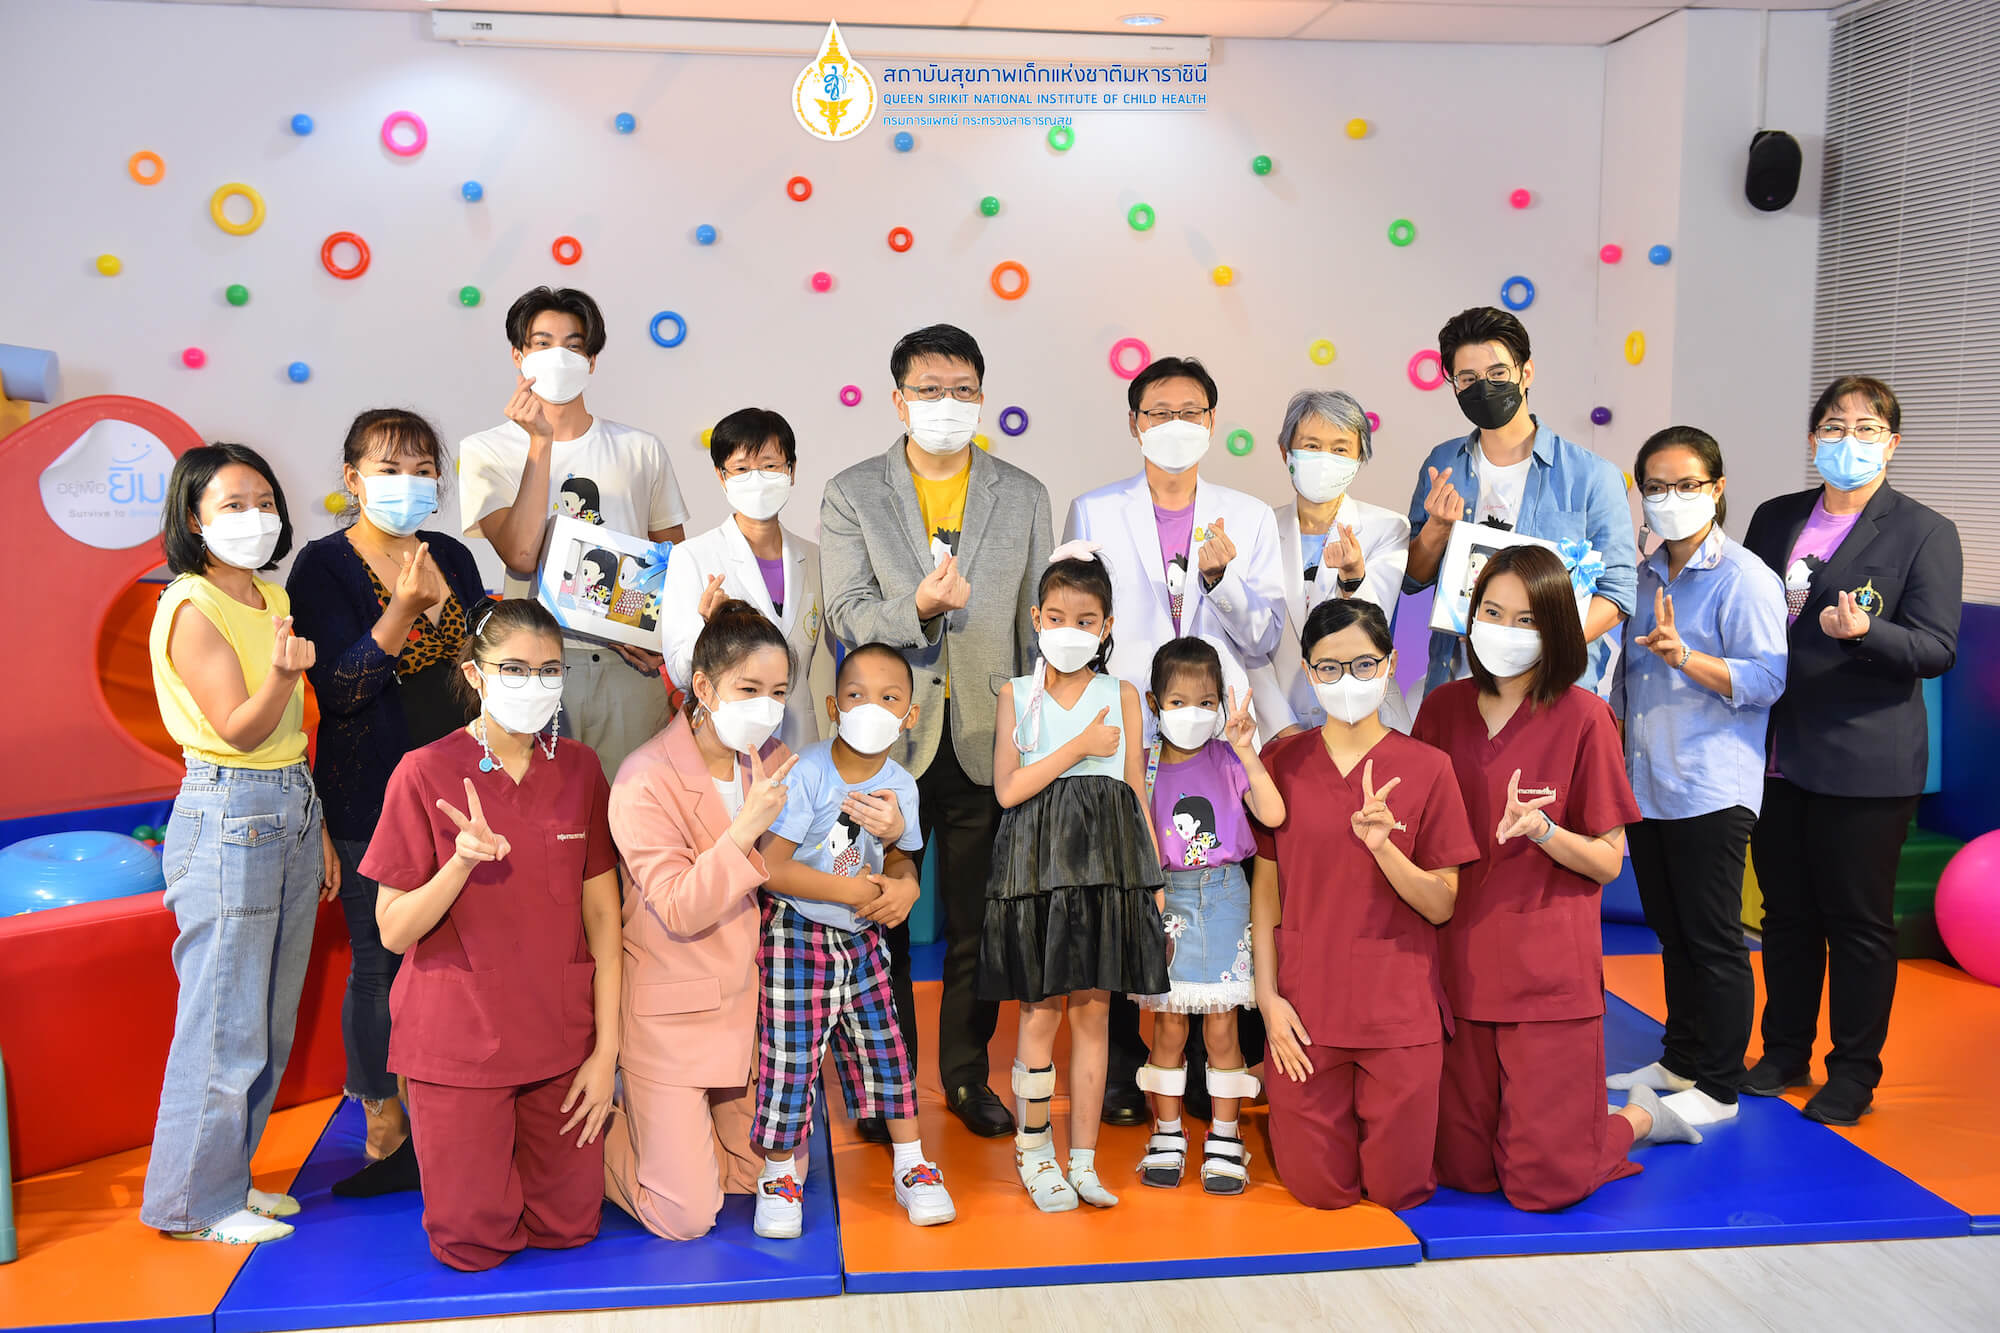 โครงการ Little Miracle ปาฏิหาริย์เล็กๆ เพื่อผู้ป่วยเด็กห้องไอซียู มูลนิธิโรงพยาบาลเด็ก กองทุนอาคารเฉลิมพระเกียรติฯ